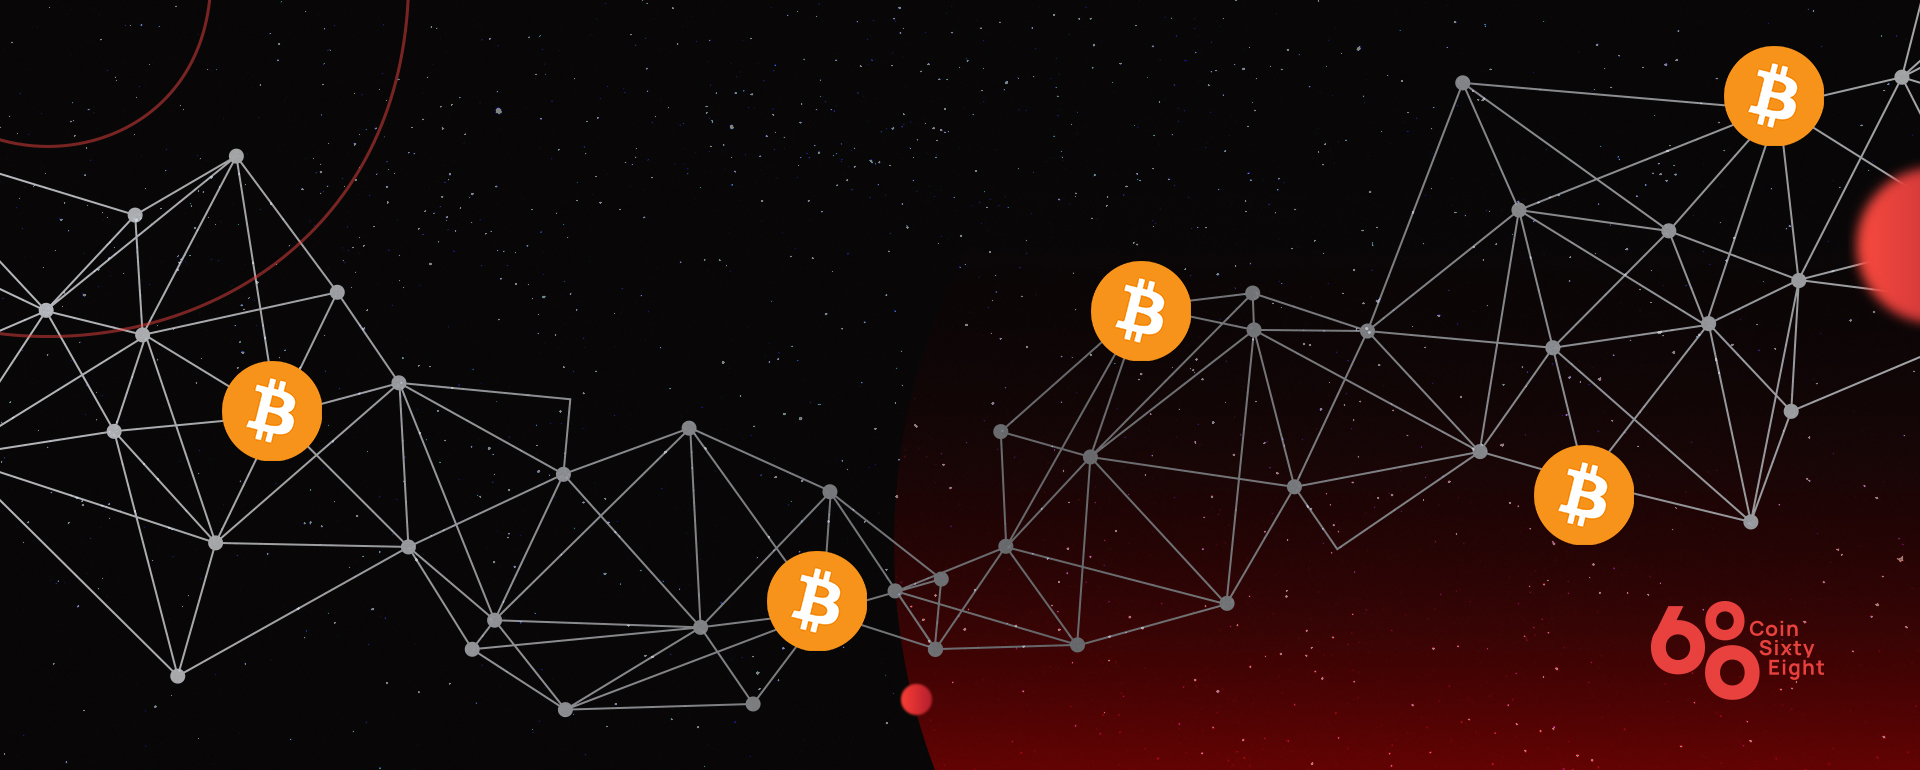 Các node của Blockchain được liên kết với nhau